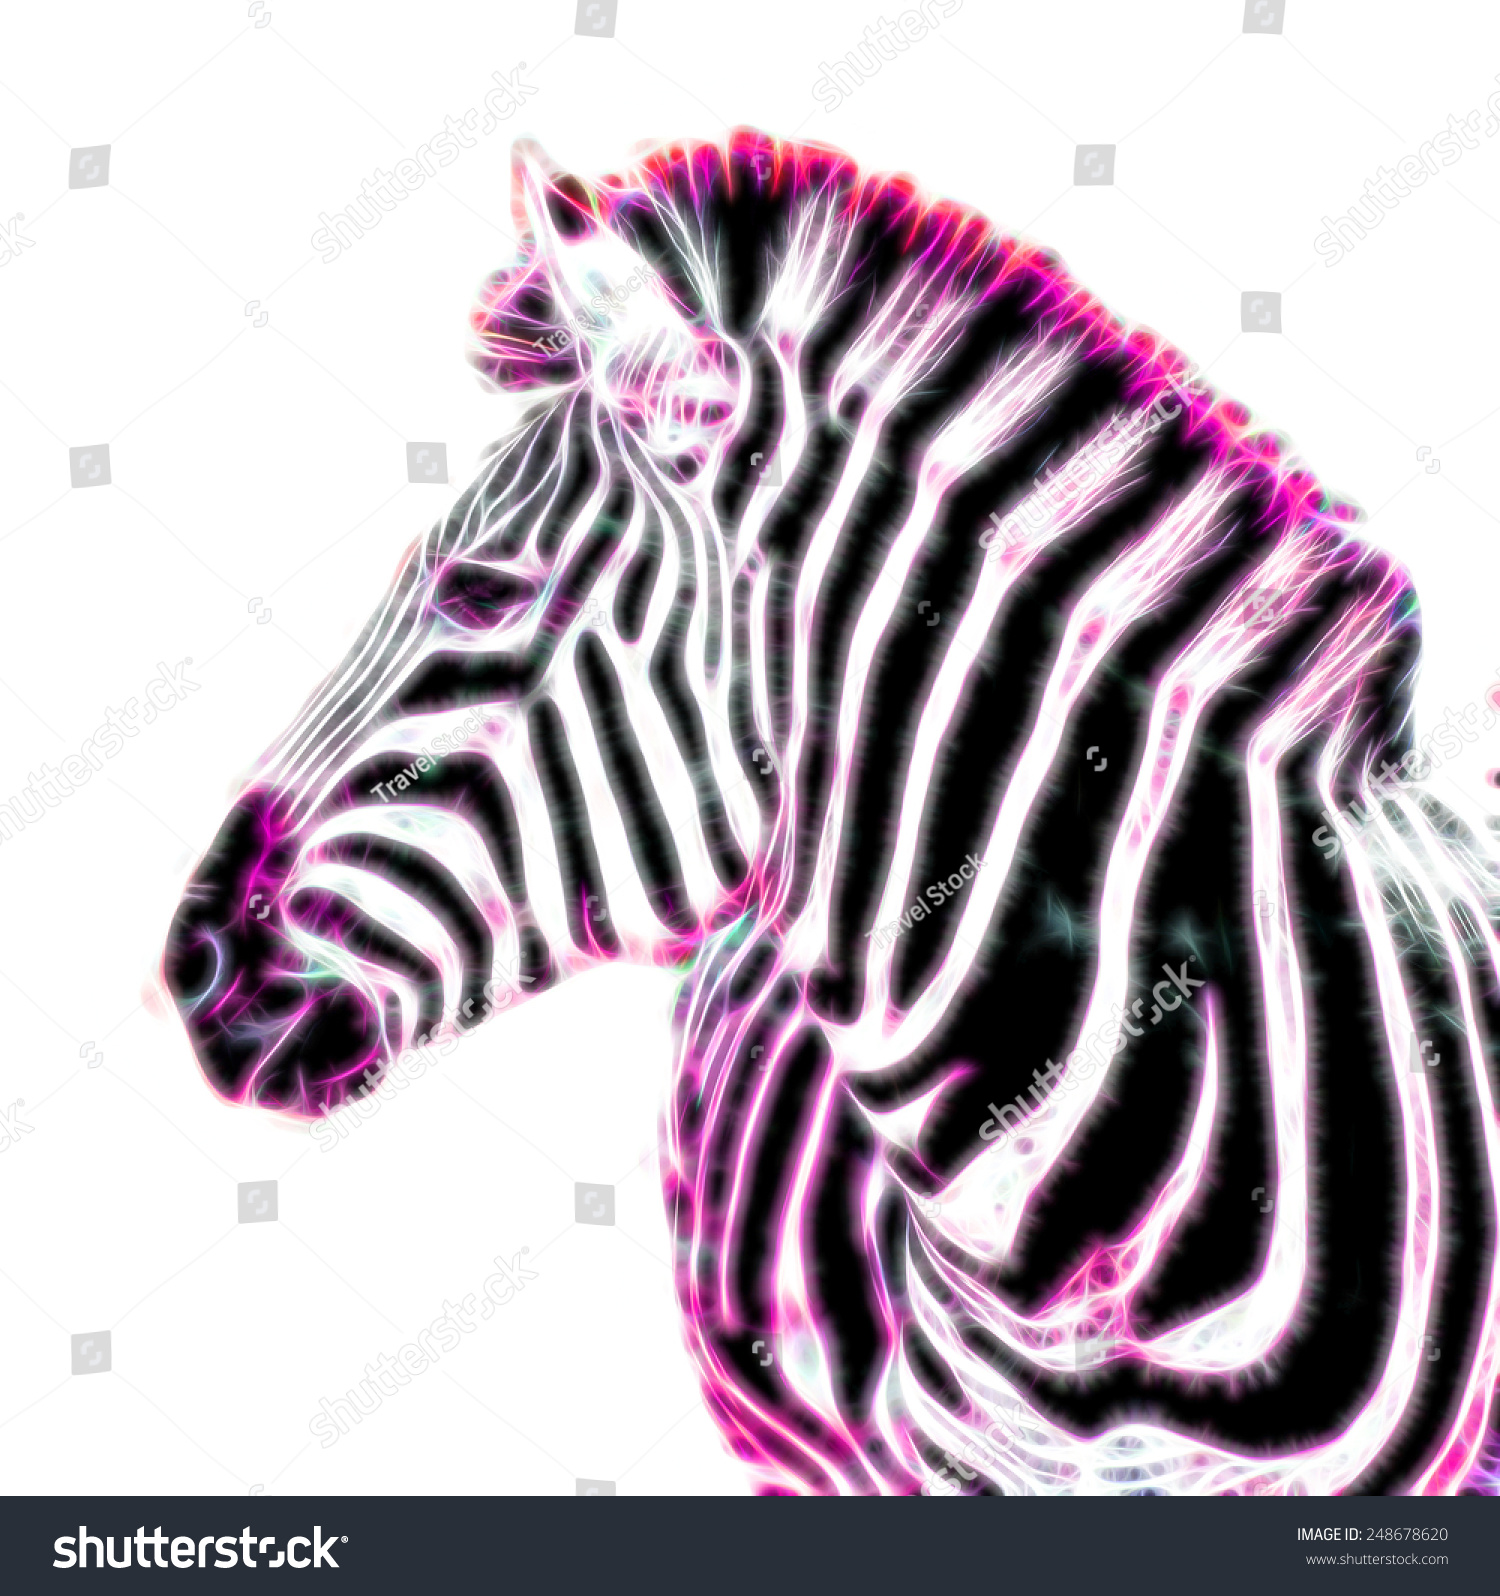 Fractal Illustration Zebra Stock Illustration 248678620 - Shutterstock